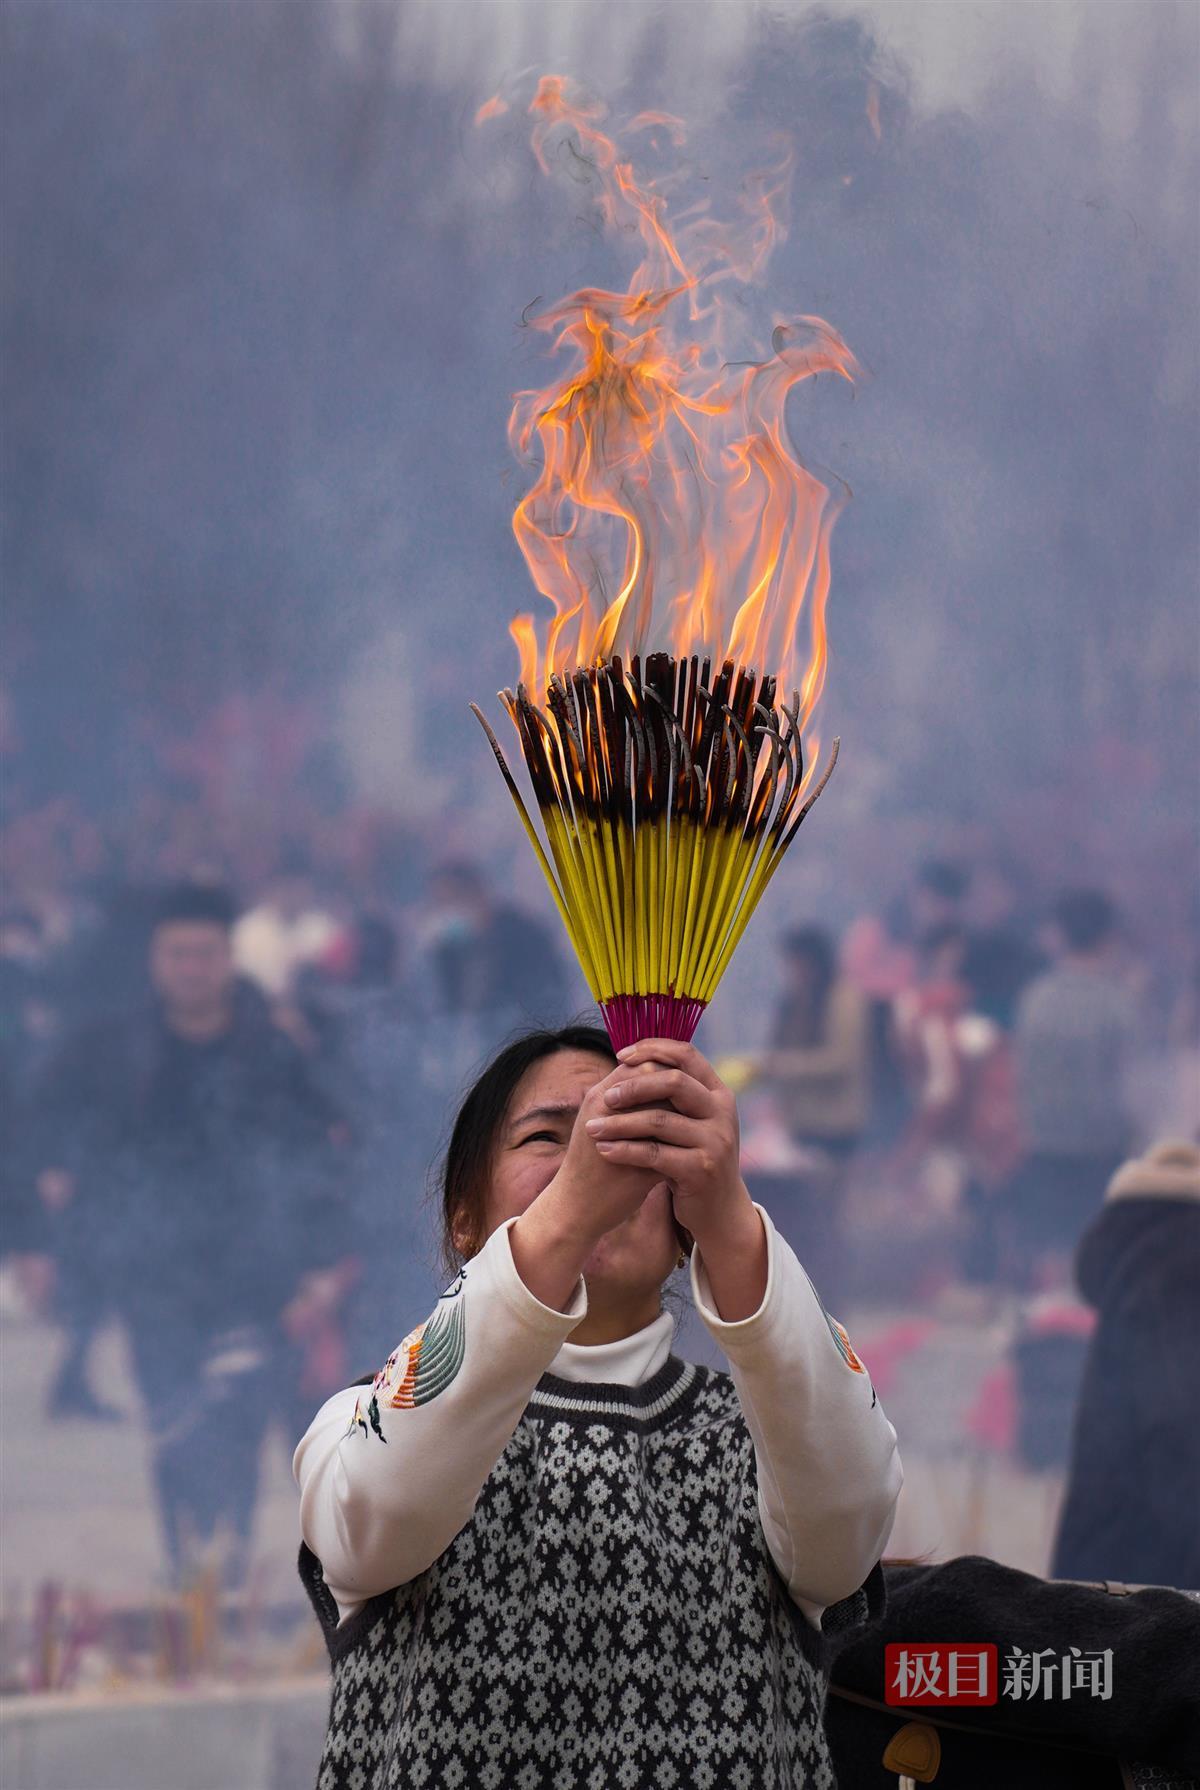 2月14日农历大年初五,武汉归元寺人气爆棚,前来祈福的武汉市民络绎不